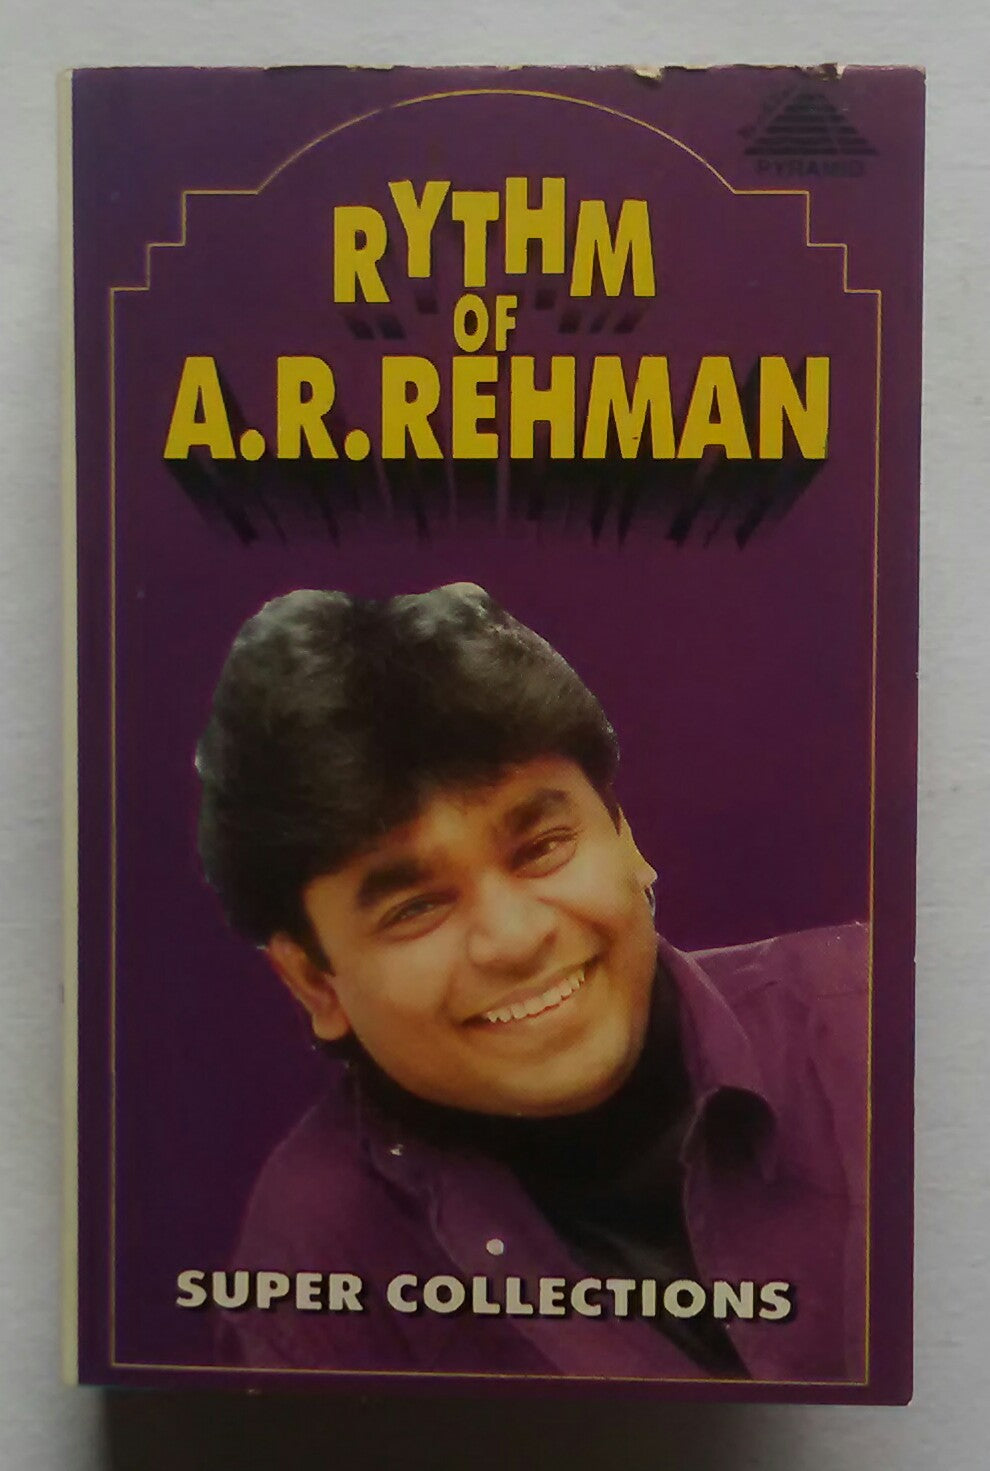 Rythm Of A.R. Rehman 